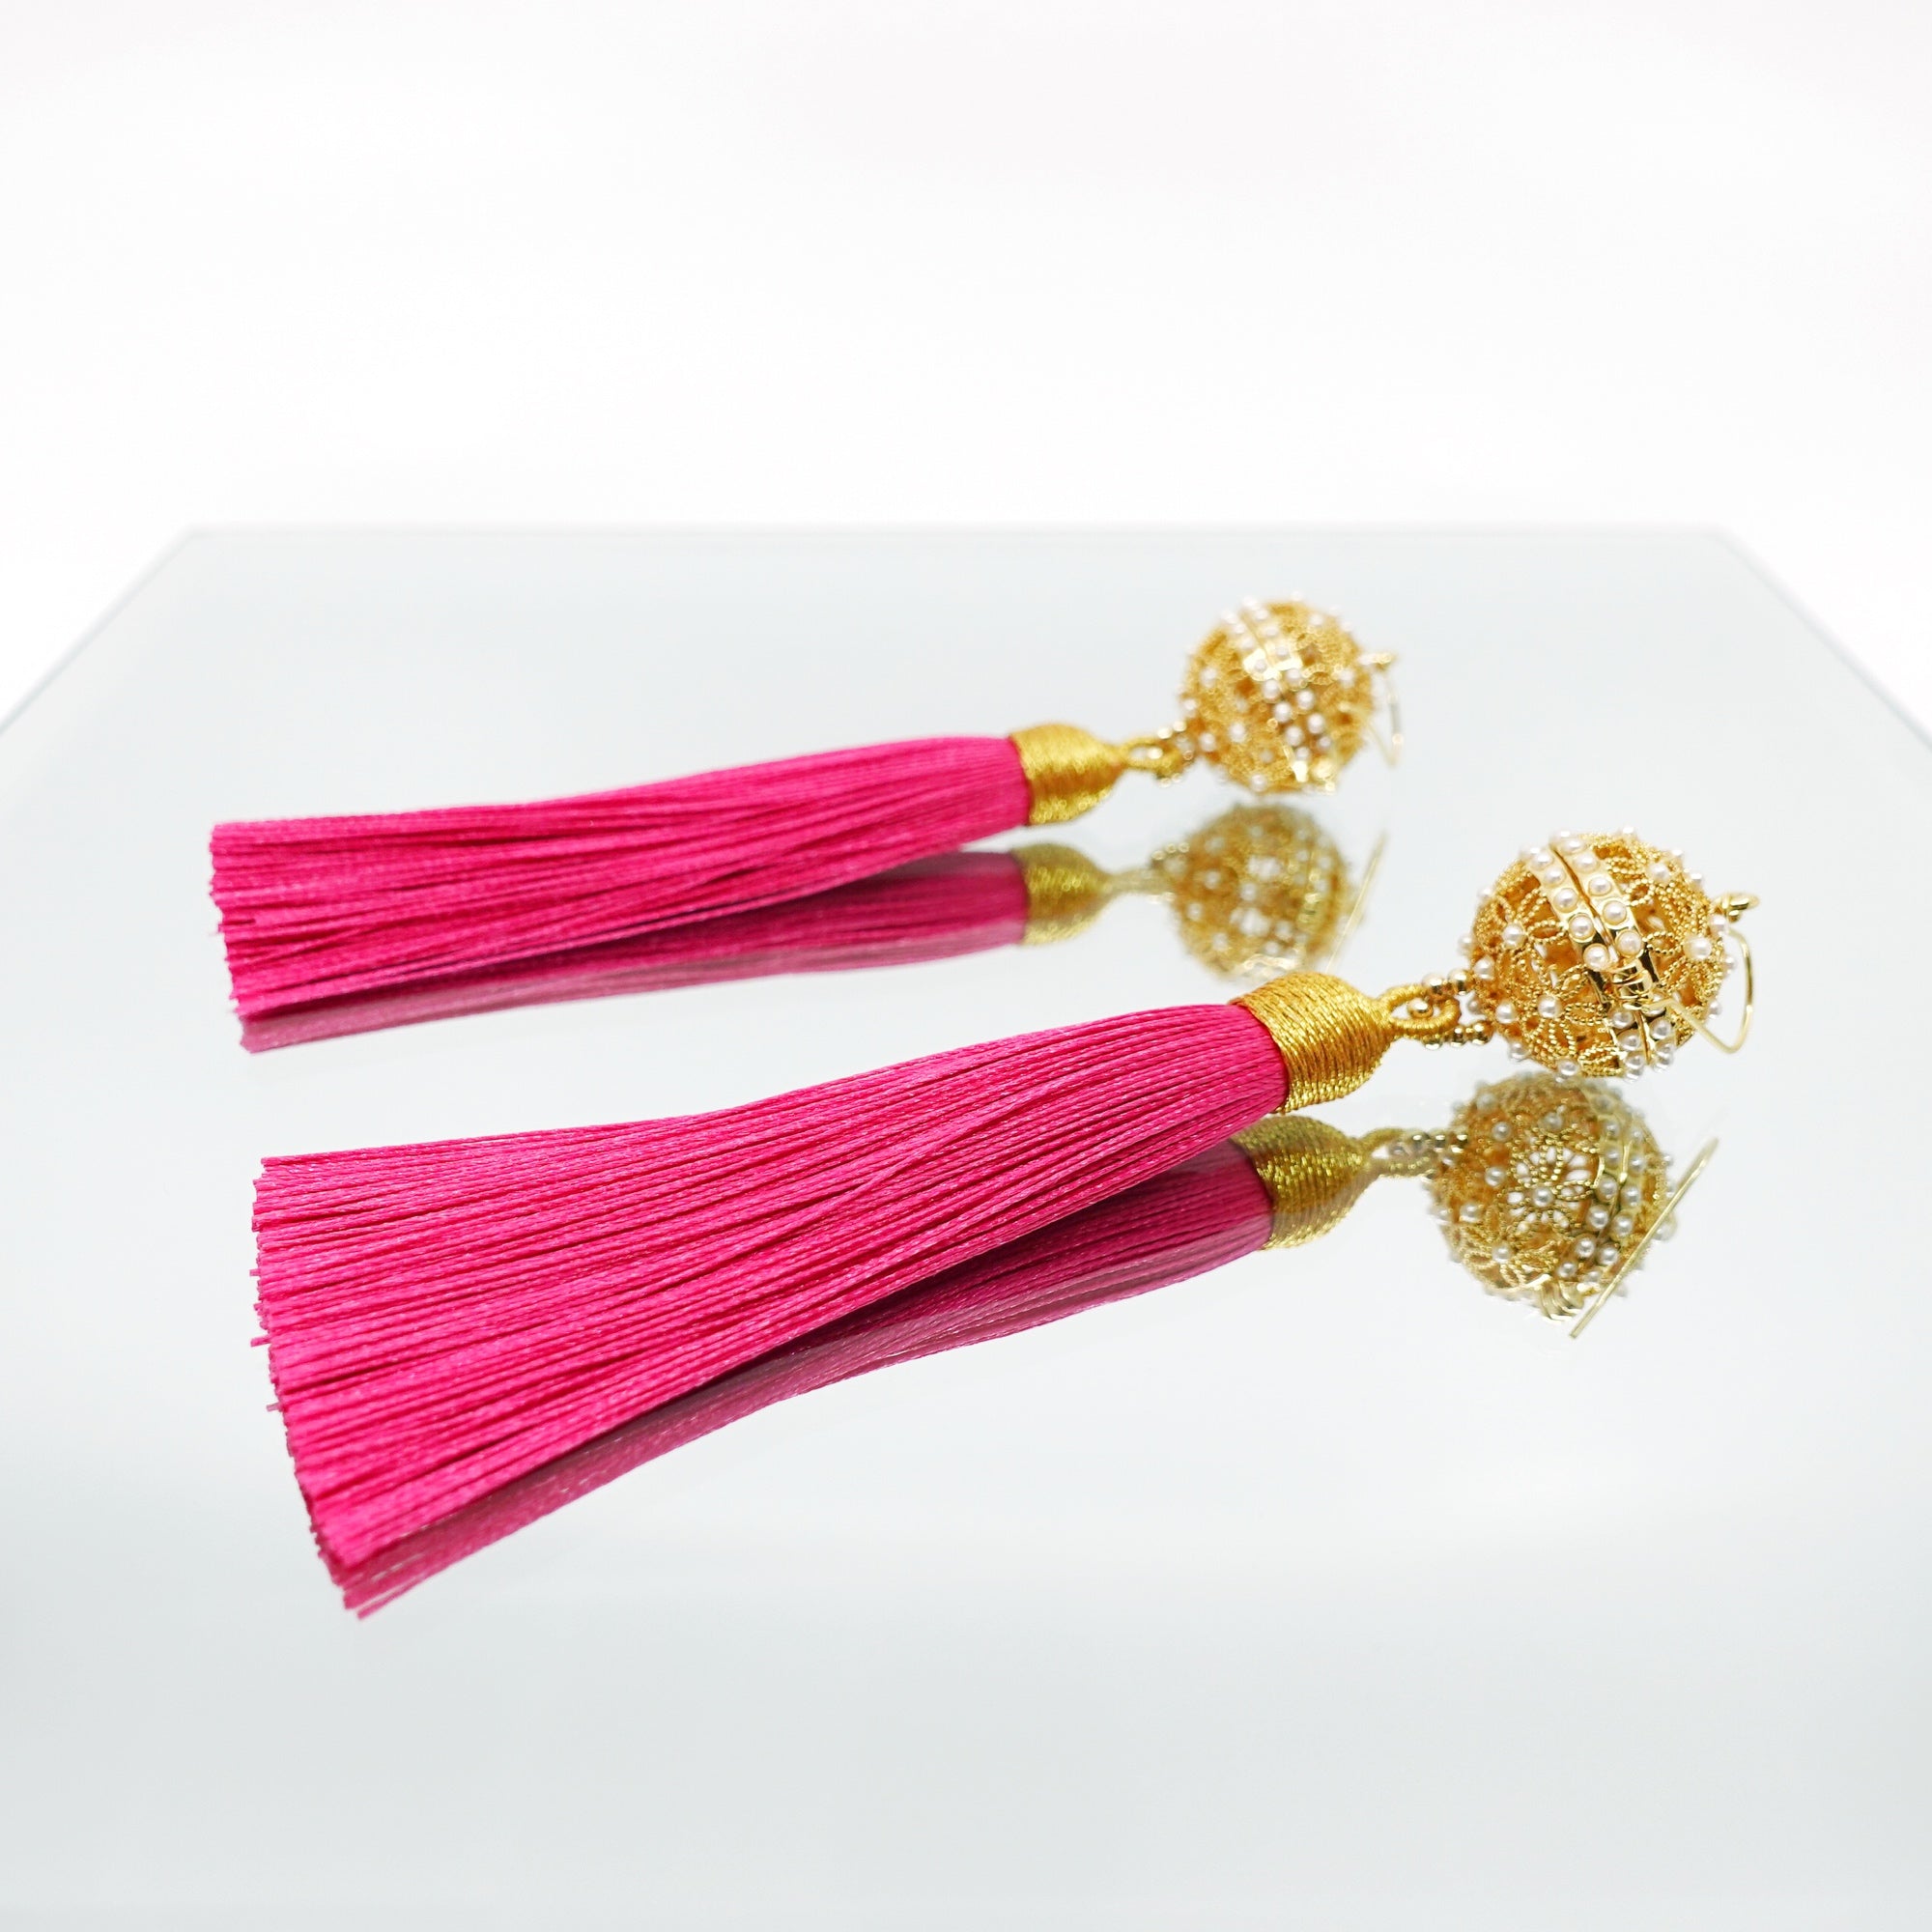 Silk Tassel Earrings Blush Pink